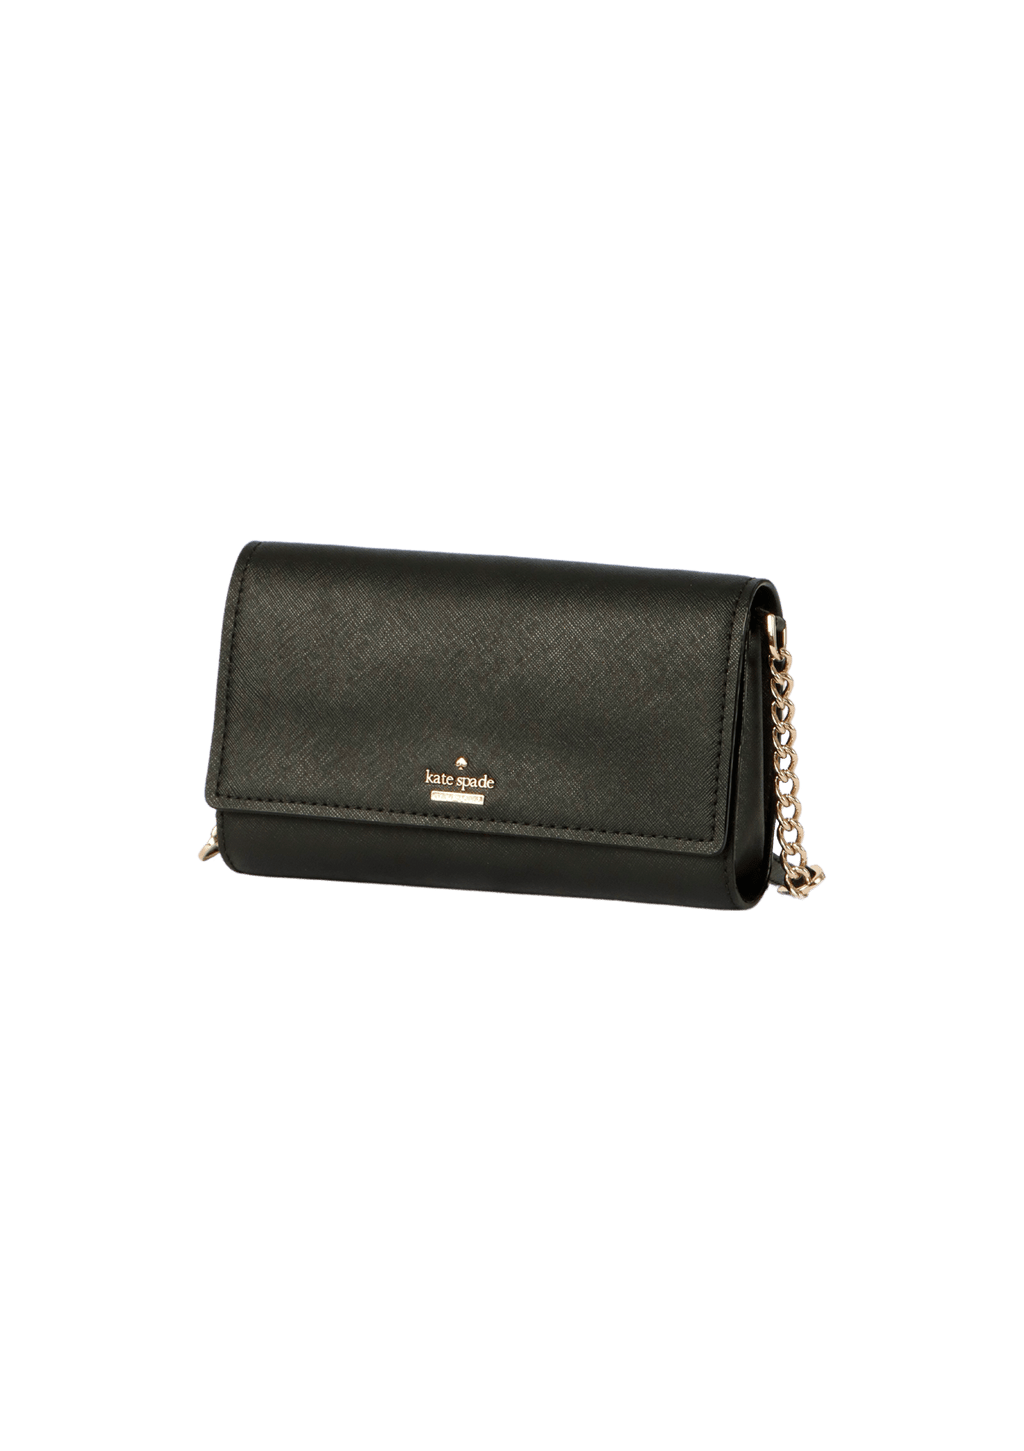 Bolsa Kate Spade Leather Spencer Bag Preta Original – Gringa